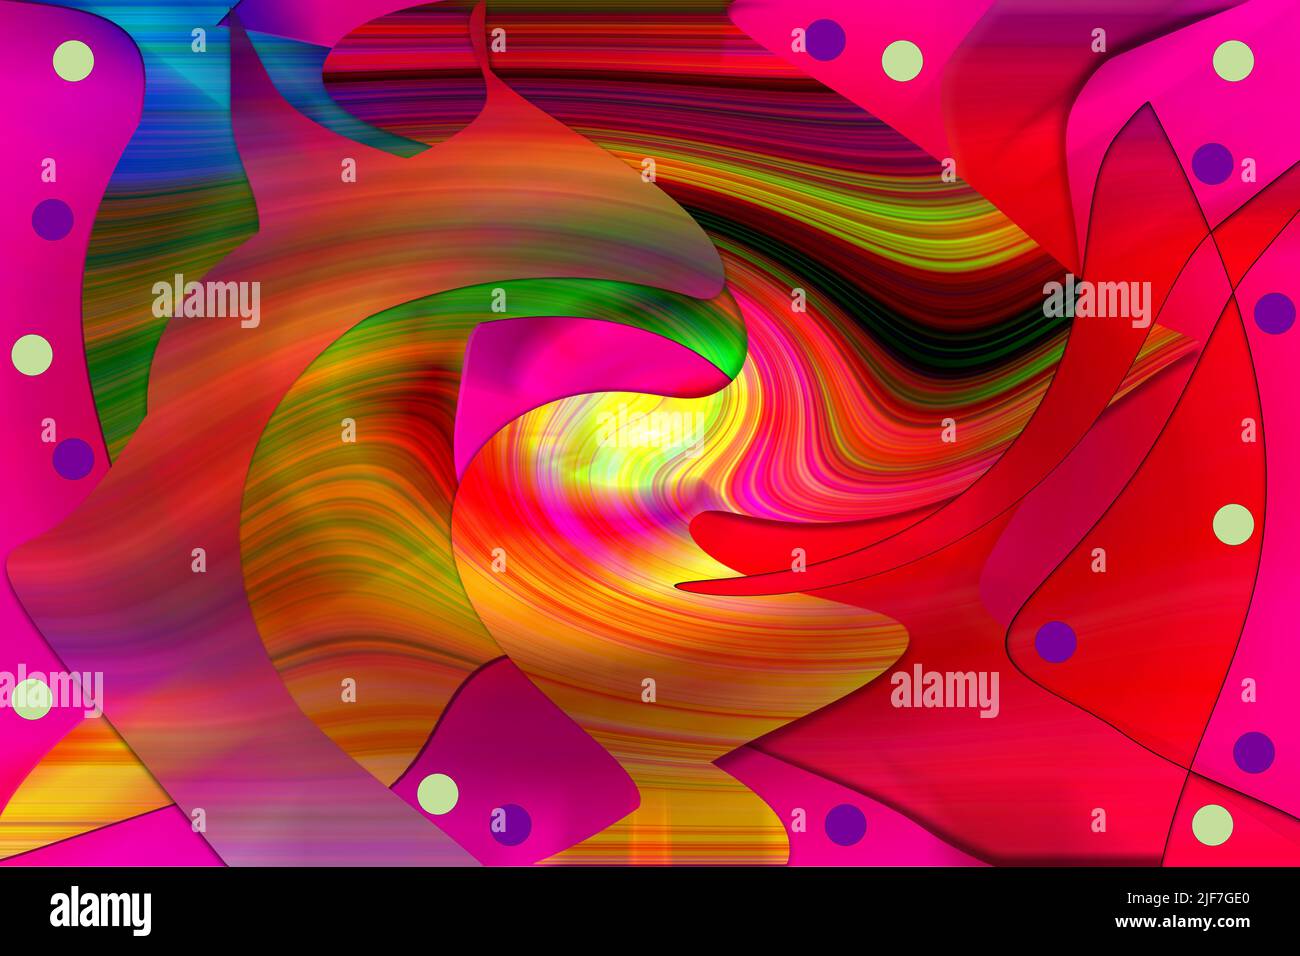 Arte digital, ilustración 3D, patrón simétrico abstracto en colores brillantes y vibrantes Foto de stock